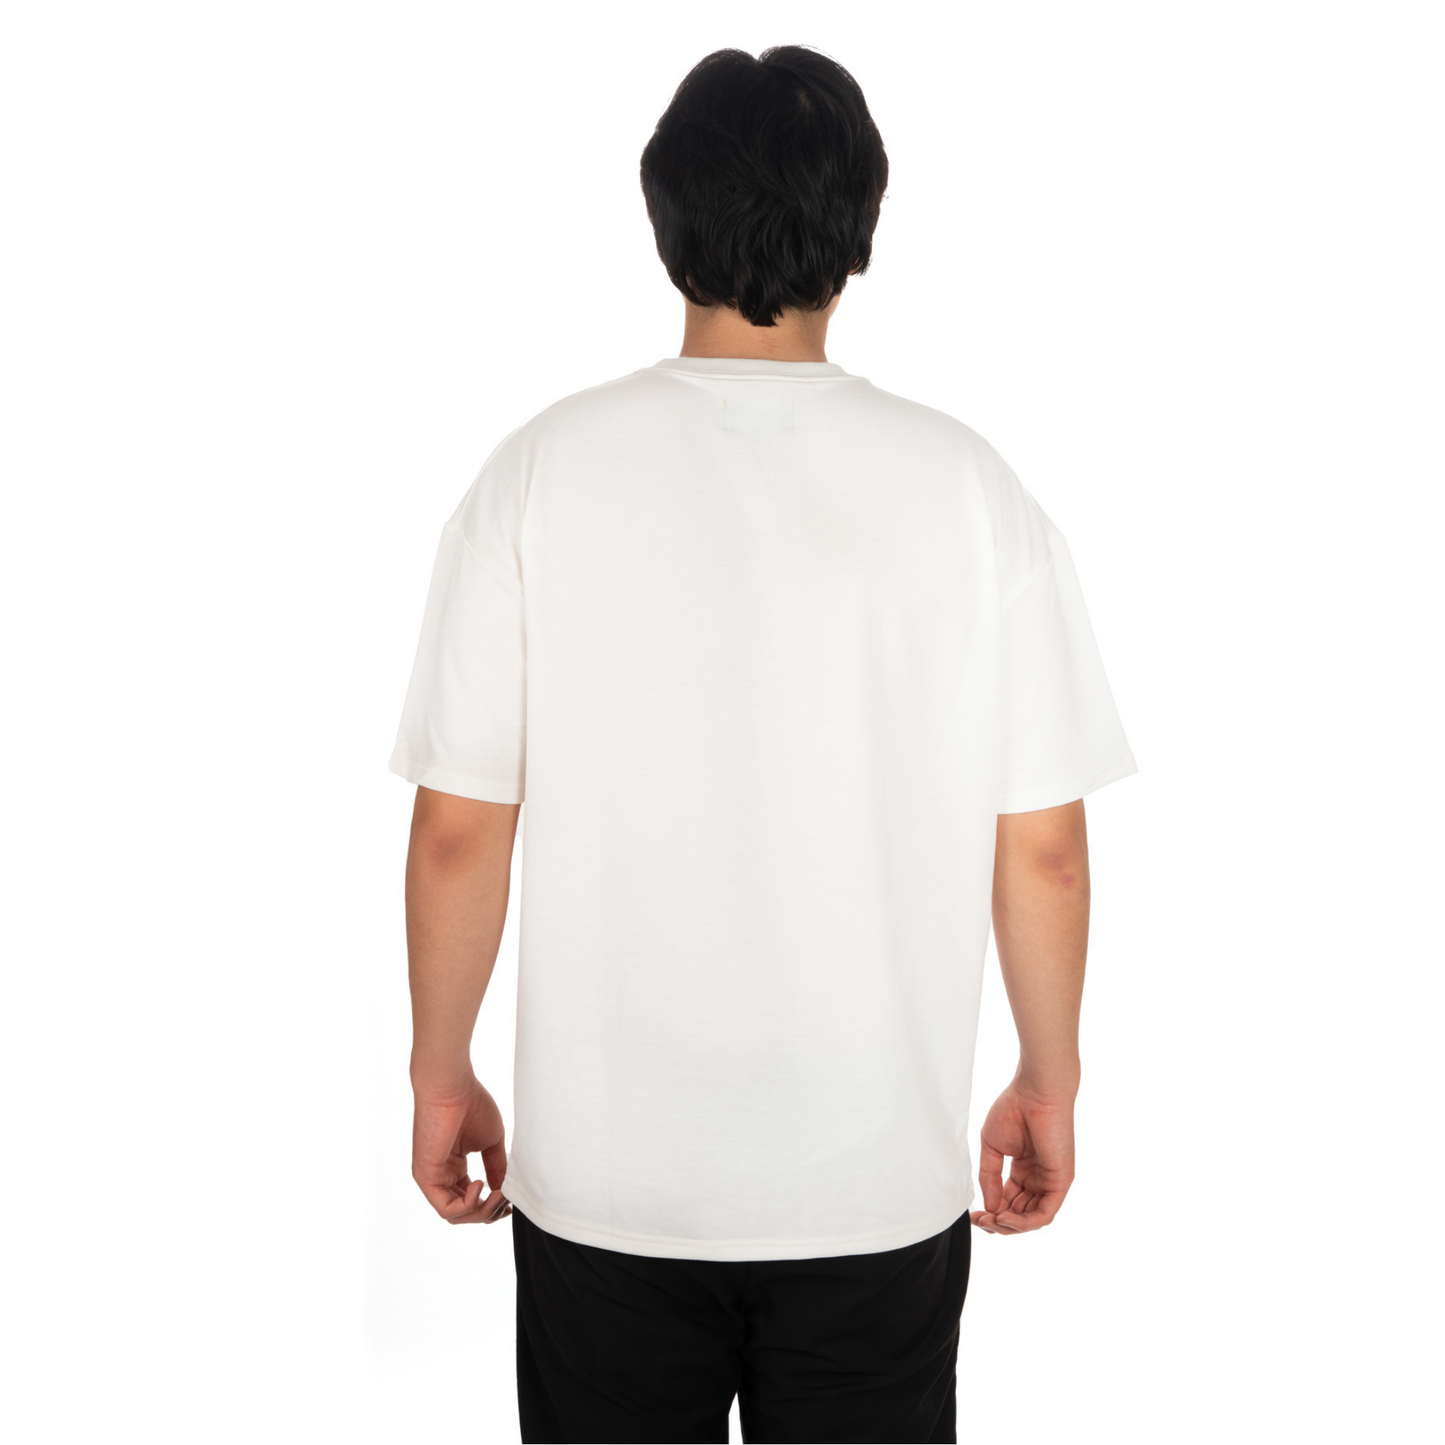 Unisex Oversized White T-shirt Libre Forever back View on male model